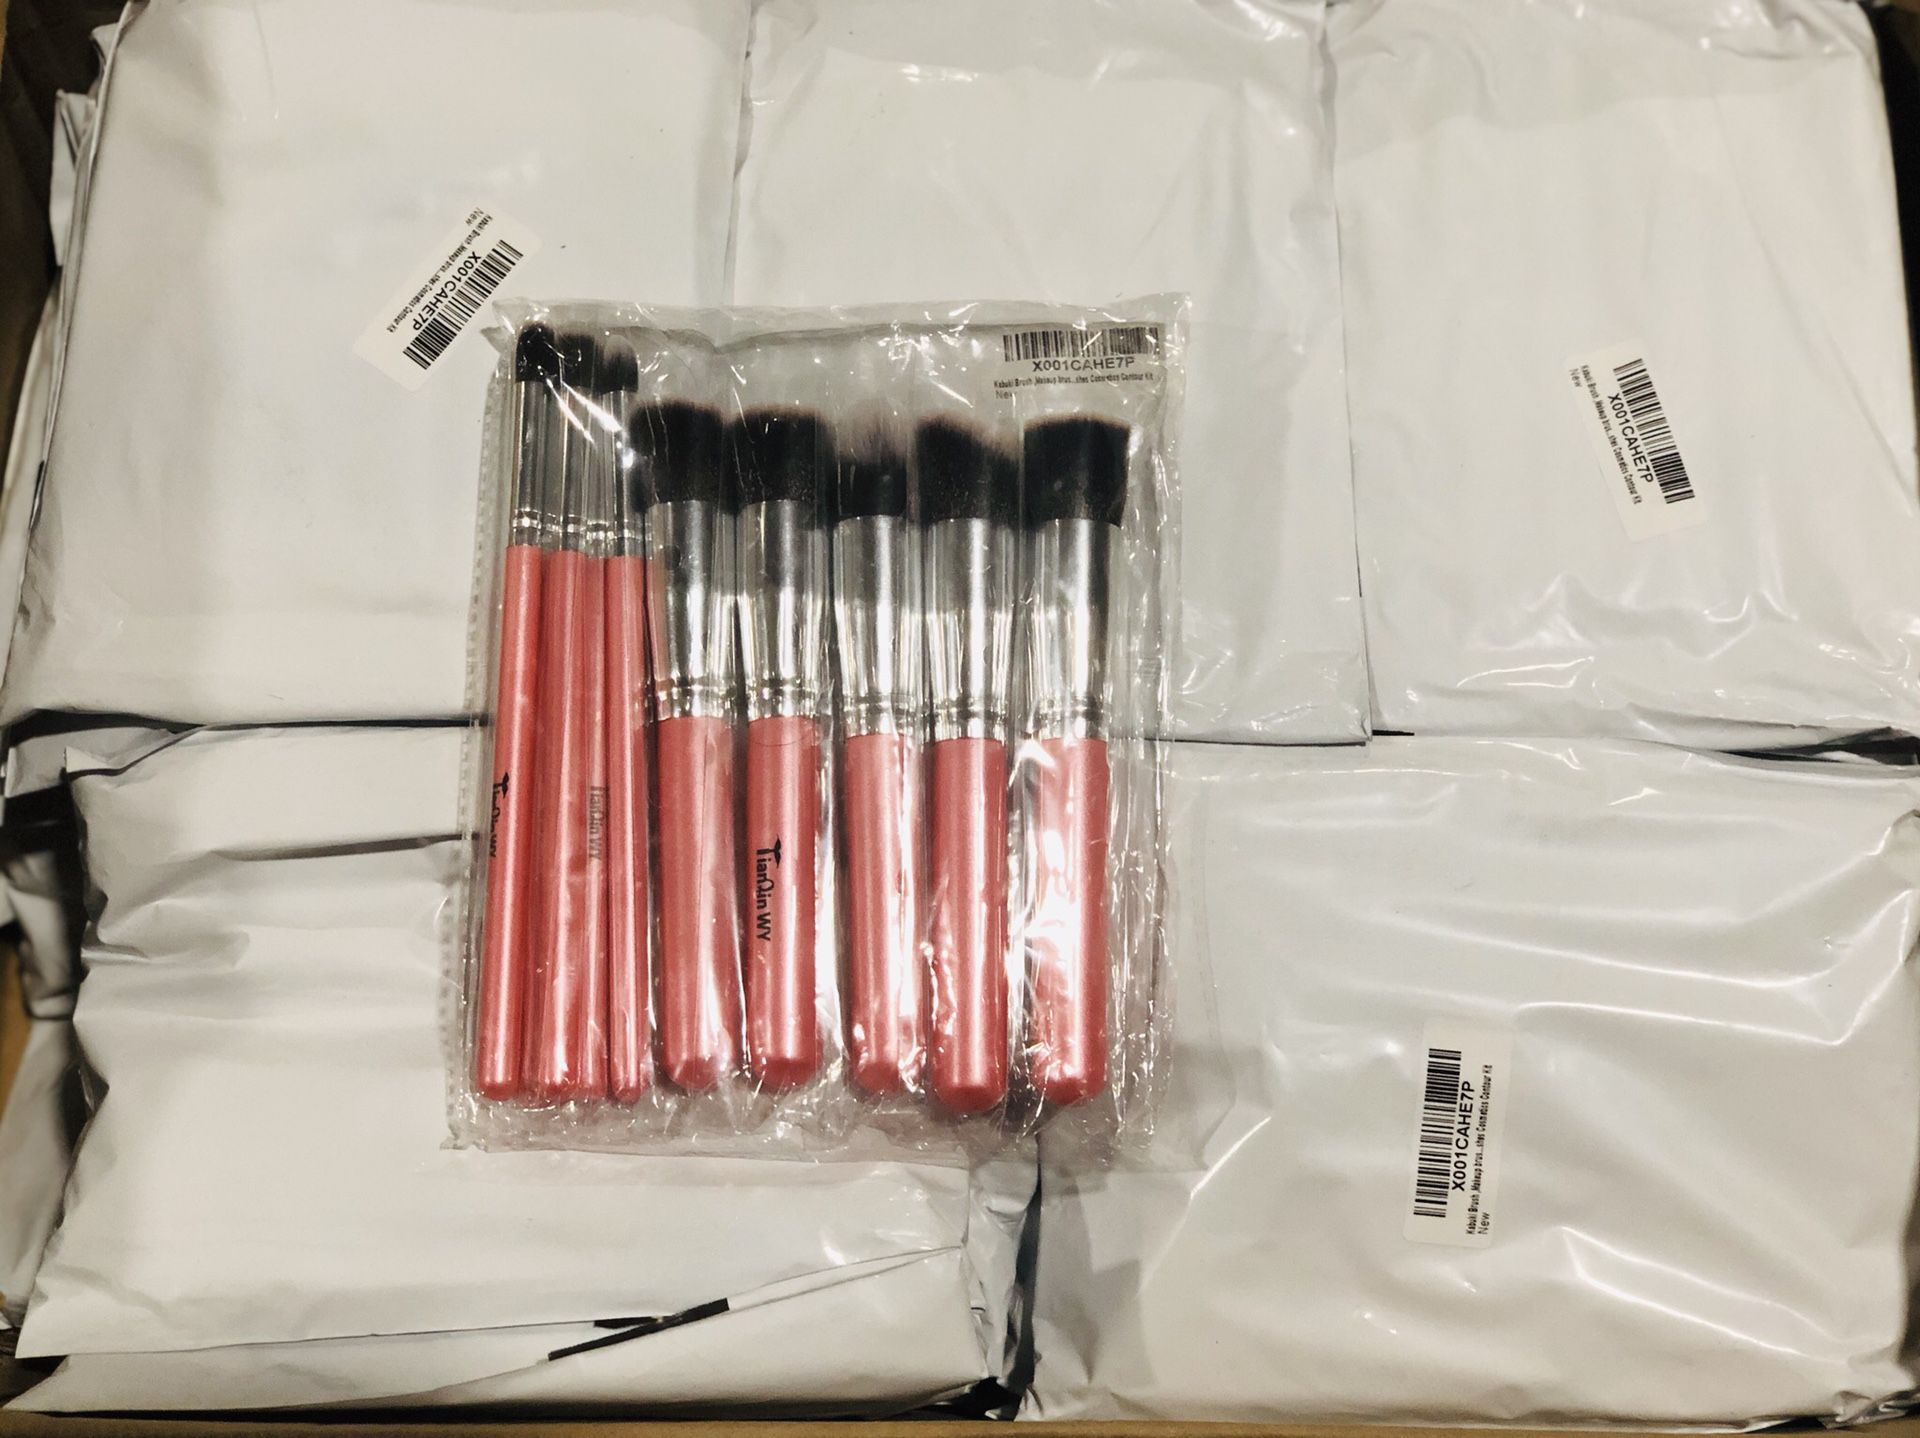 Brand New Lot - 95 Kabuki Makeup Brush Kits - 8 and 10 piece Brush Sets - Black/Pink/Natural - Individually Packaged - NEW